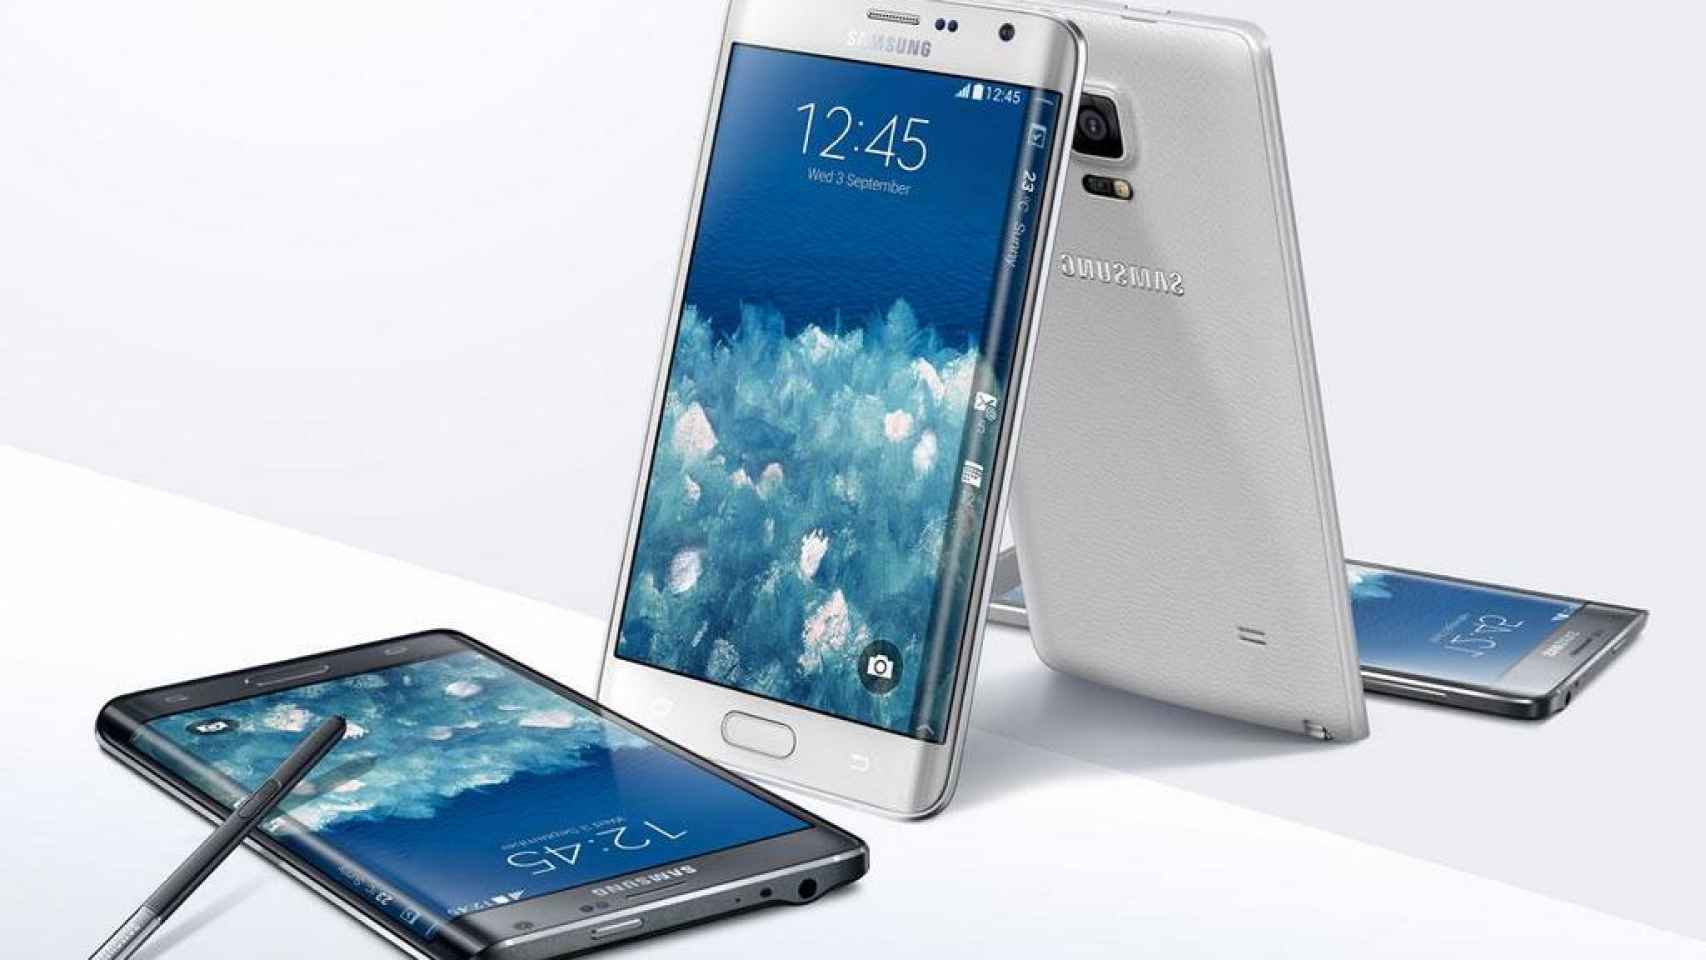 Samsung Galaxy Note Edge, el Note 4 con pantalla curva